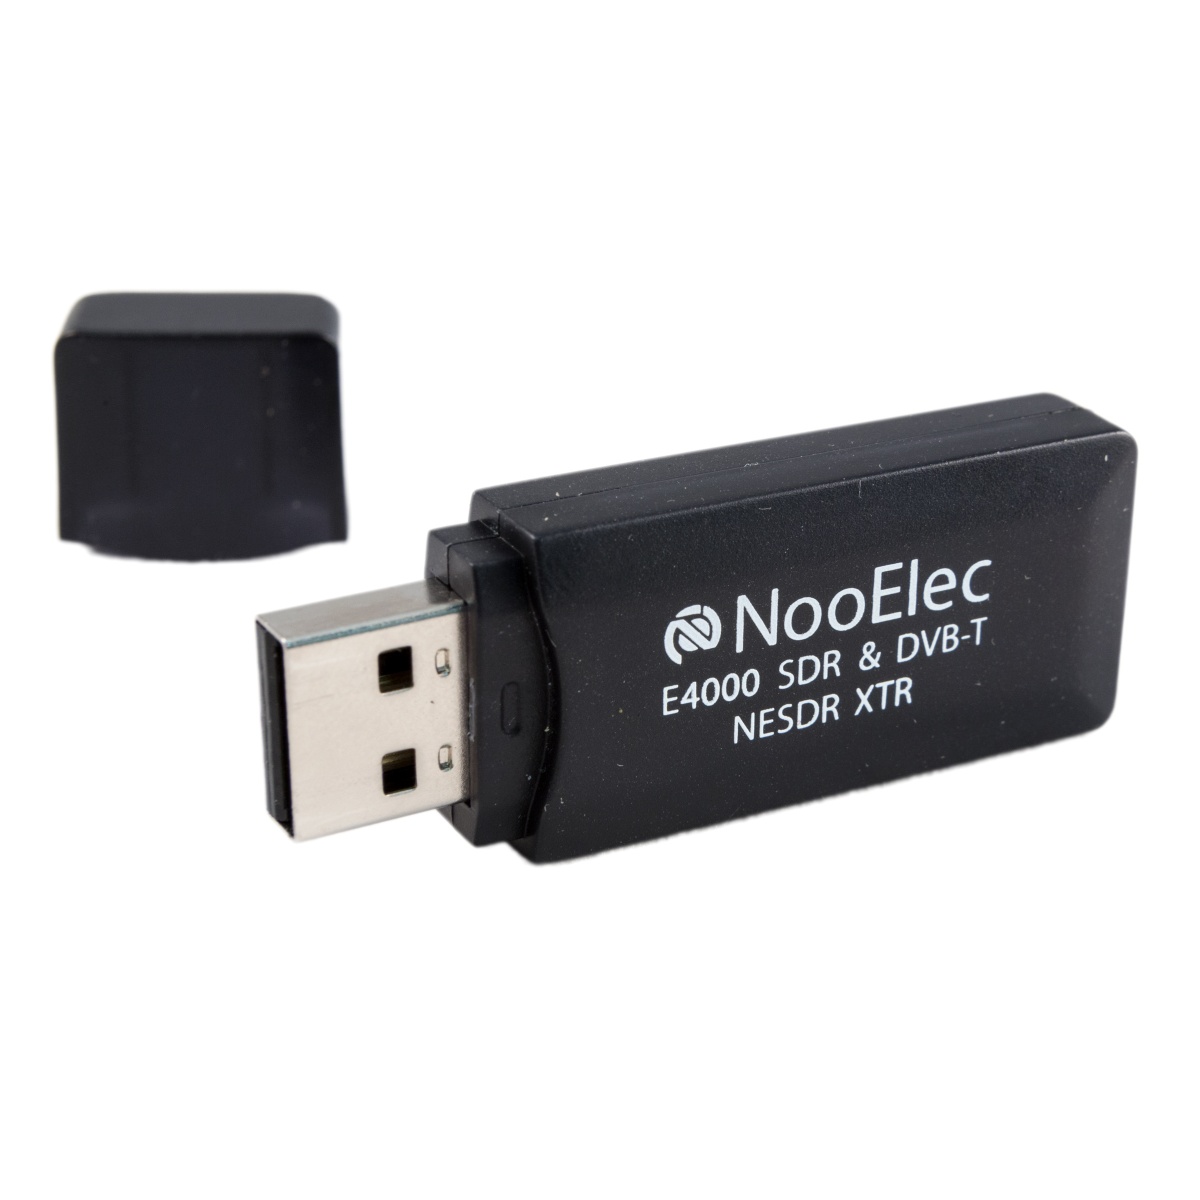 Nooelec - NESDR XTR Tiny SDR & USB Stick (RTL2832U + E4000) w/ Antenna and Control